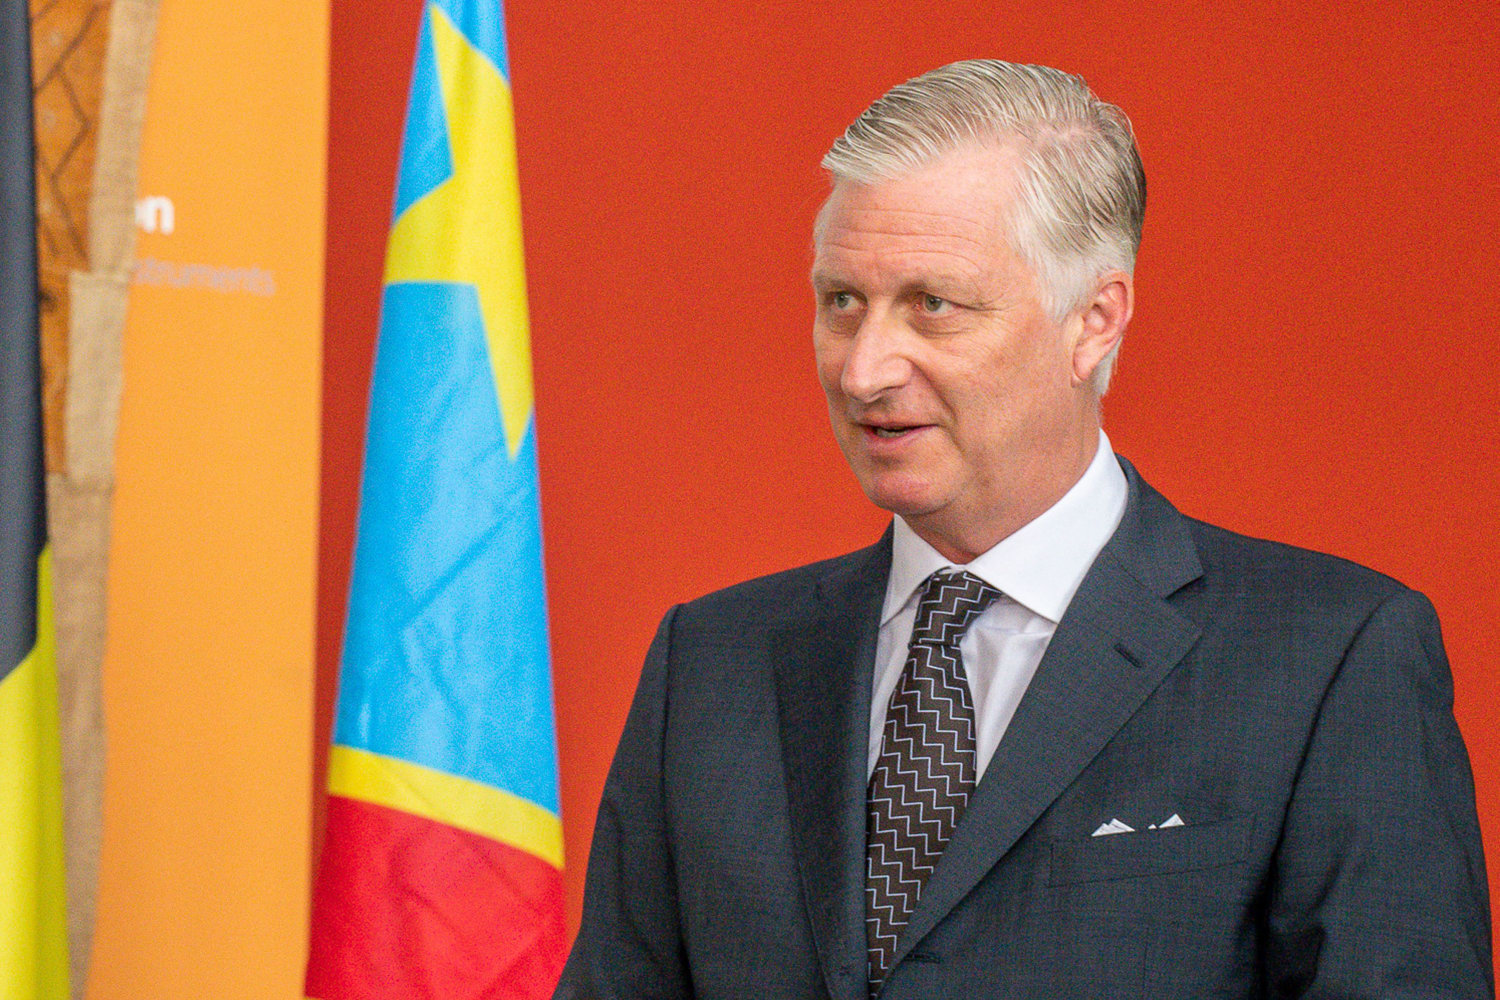 De Belgische koning herhaalde spijt over het koloniale verleden van Congo, maar verontschuldigde zich niet